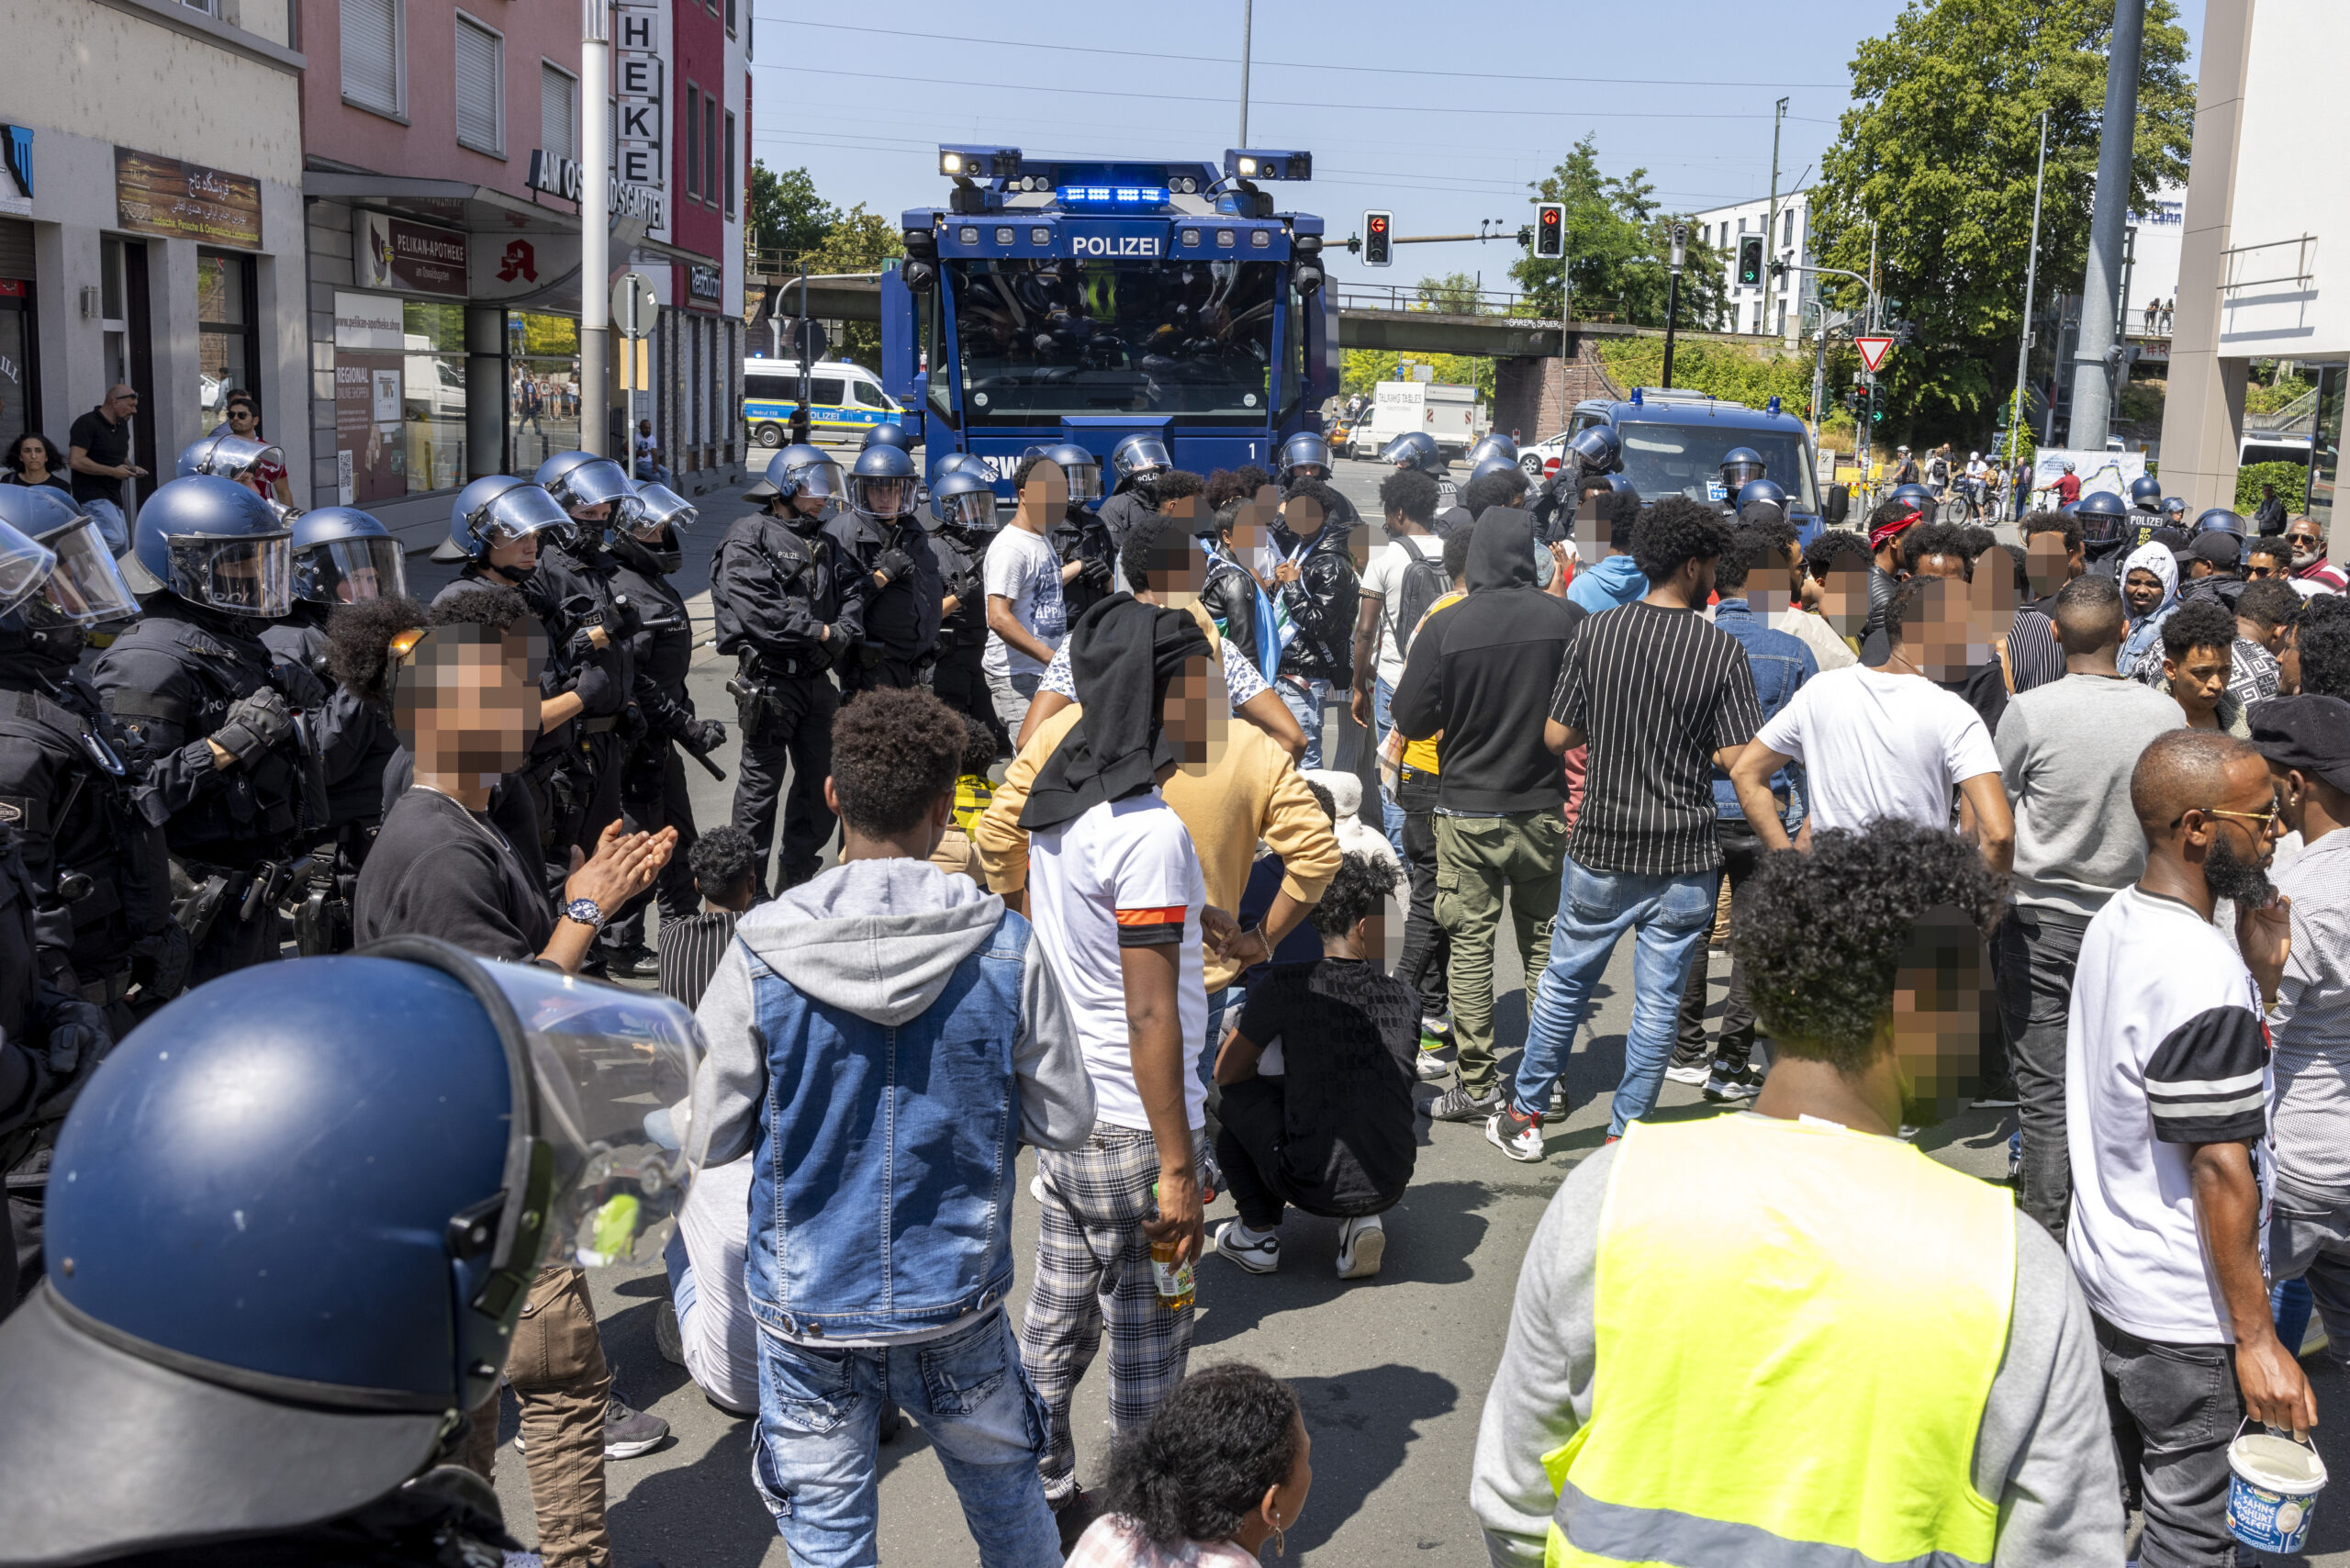 Polizisten haben am Rande des Eritrea-Festivals in Gießen eine Gruppe von Menschen umringt. Im Hintergrund steht ein Wasserwerfer bereit.